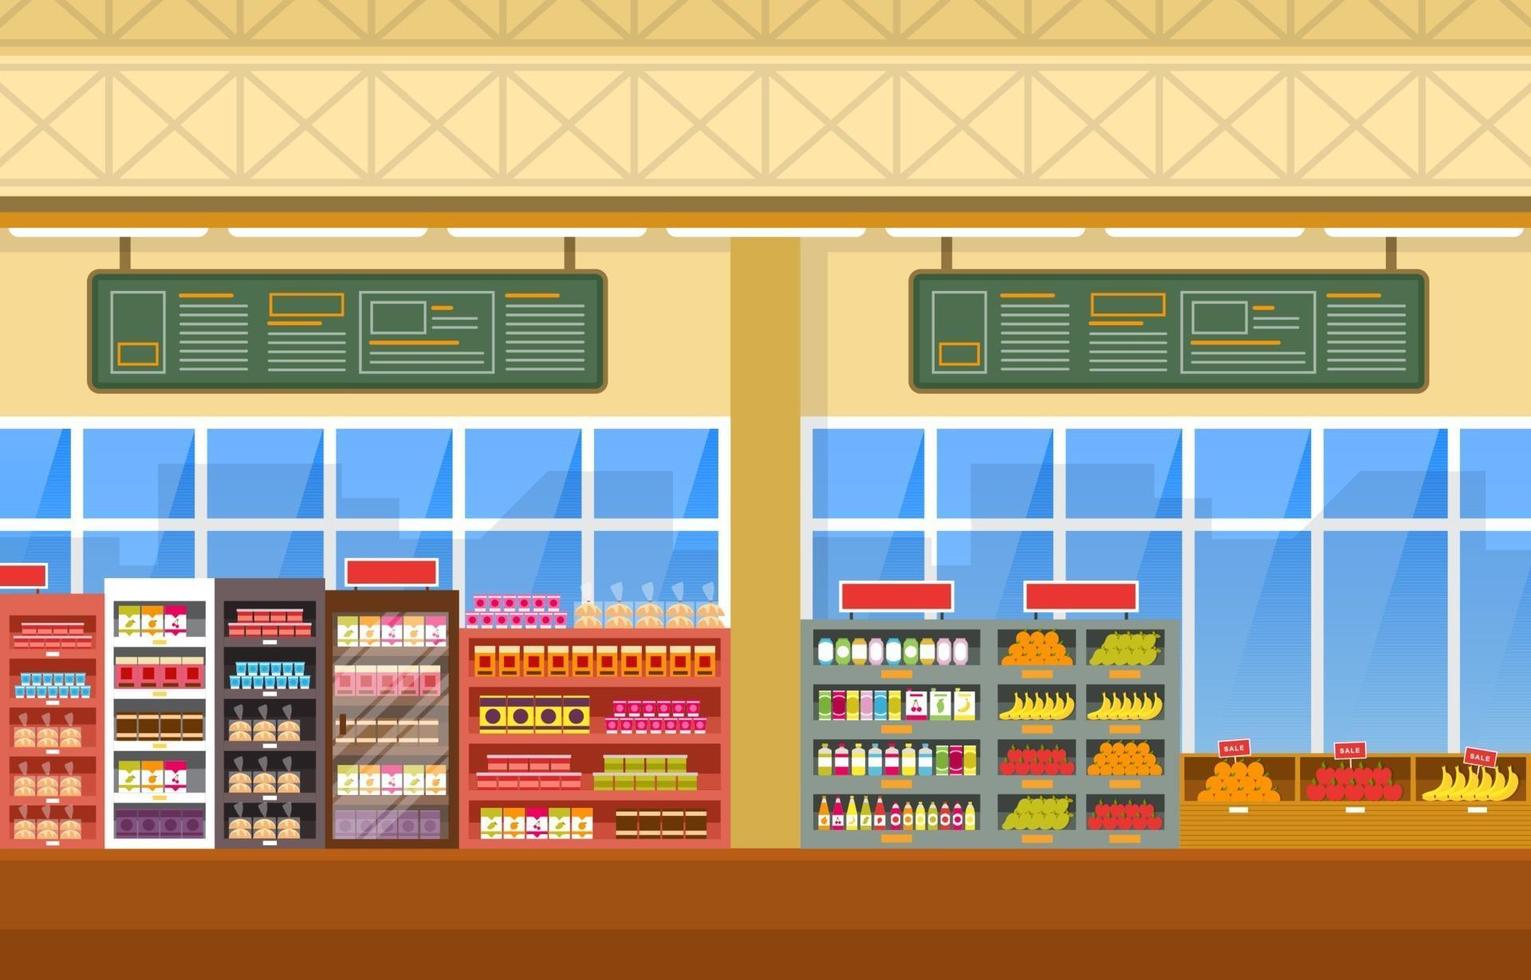 supermercado tienda de comestibles interior ilustración plana vector